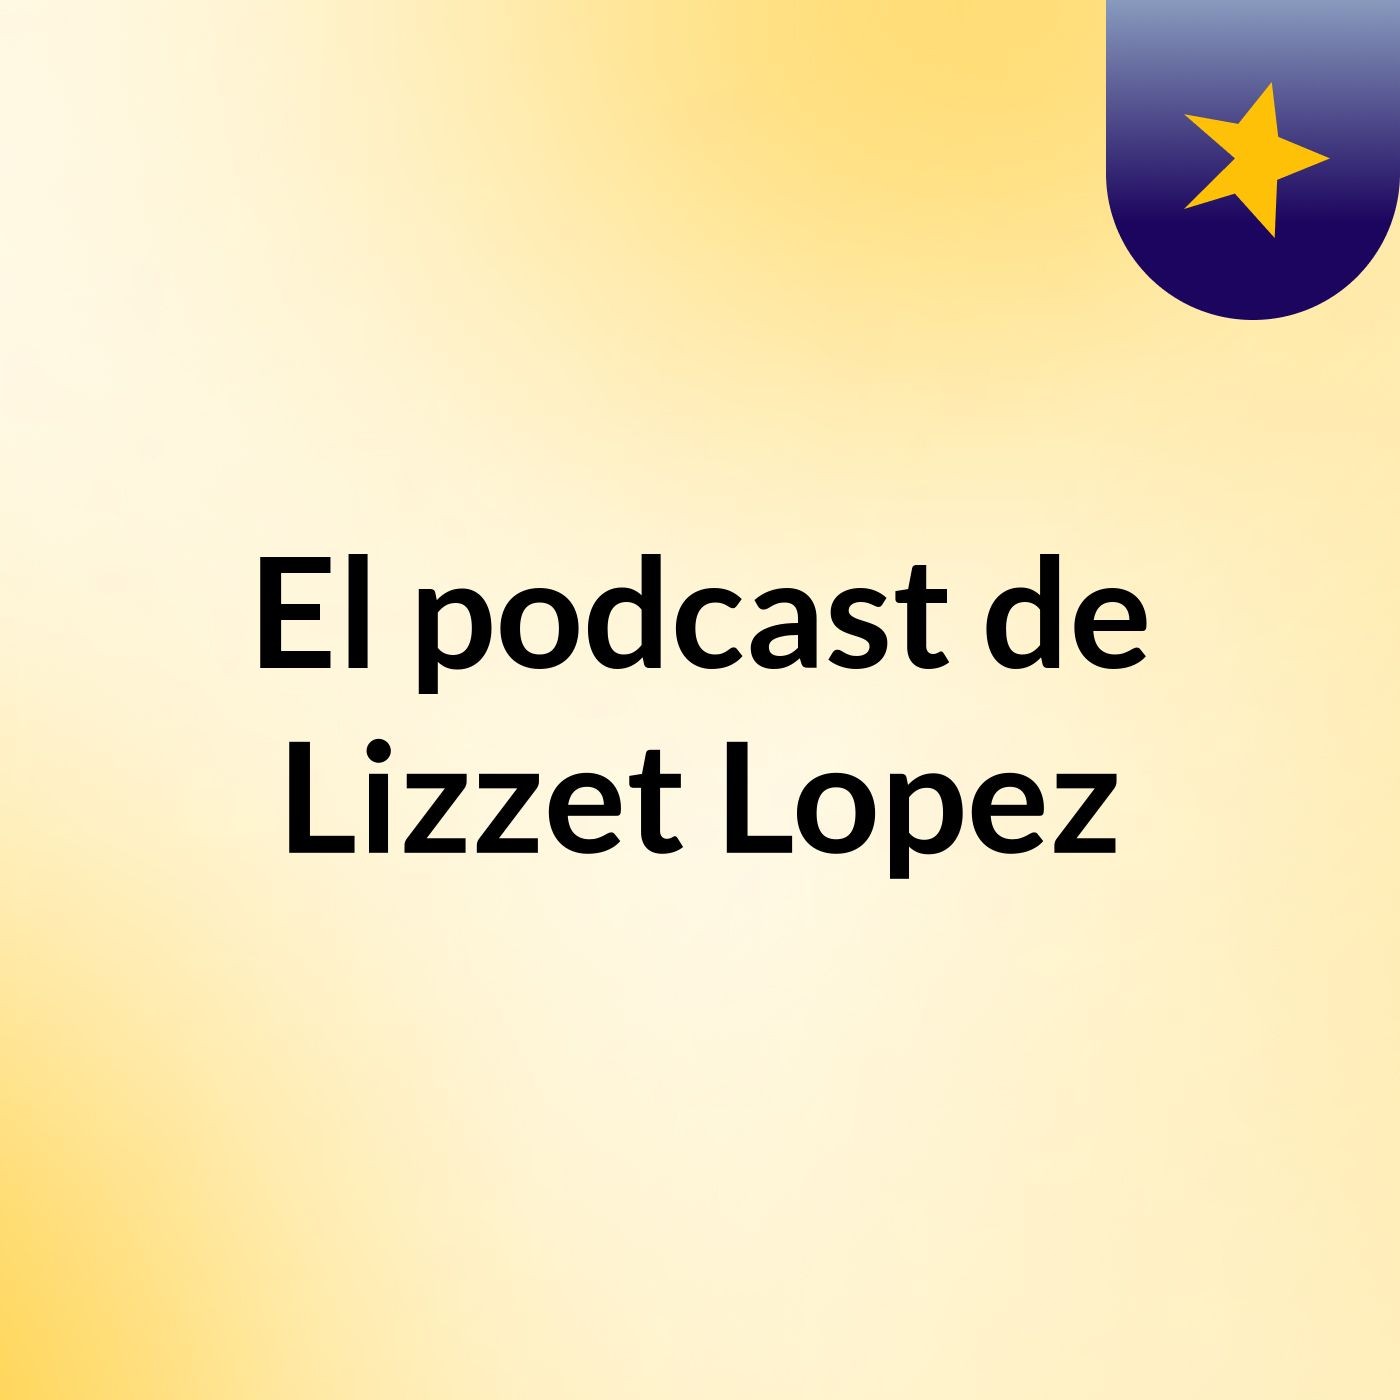 El podcast de Lizzet Lopez